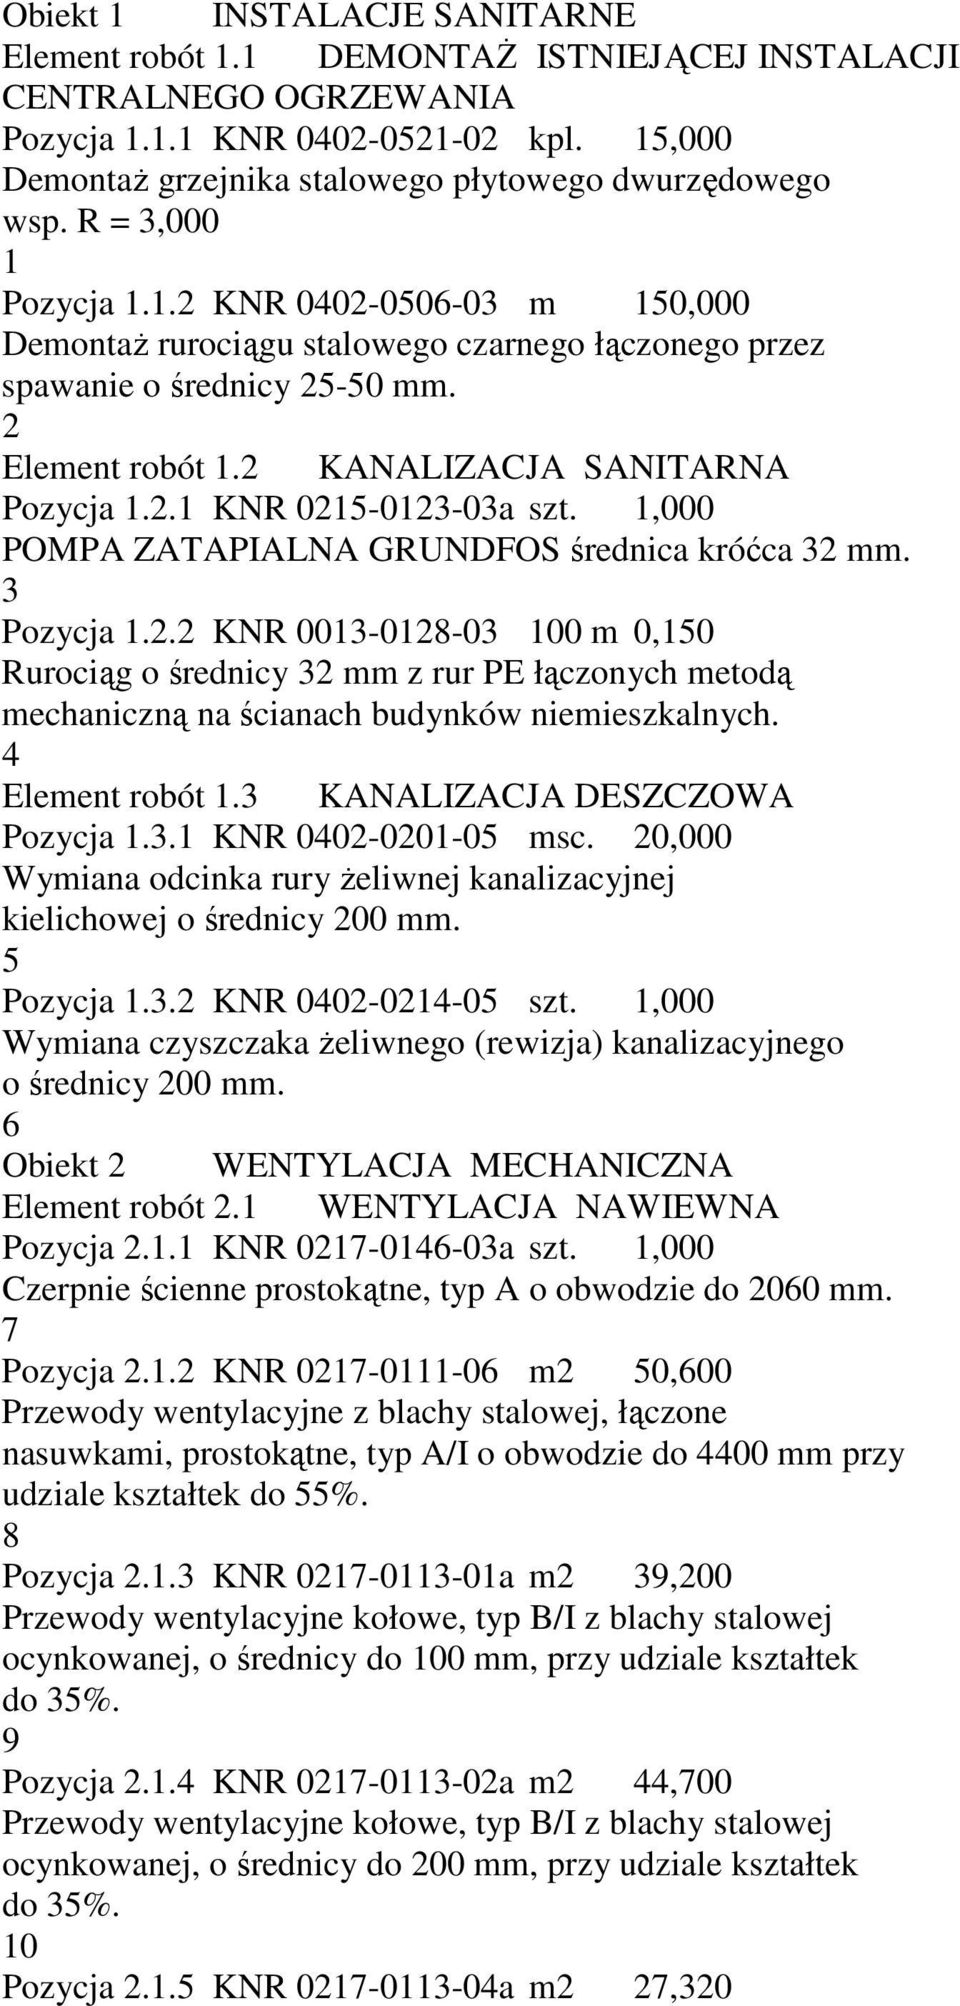 2 Element robót 1.2 KANALIZACJA SANITARNA Pozycja 1.2.1 KNR 0215-0123-03a szt. 1,000 POMPA ZATAPIALNA GRUNDFOS średnica króćca 32 mm. 3 Pozycja 1.2.2 KNR 0013-0128-03 100 m 0,150 Rurociąg o średnicy 32 mm z rur PE łączonych metodą mechaniczną na ścianach budynków niemieszkalnych.